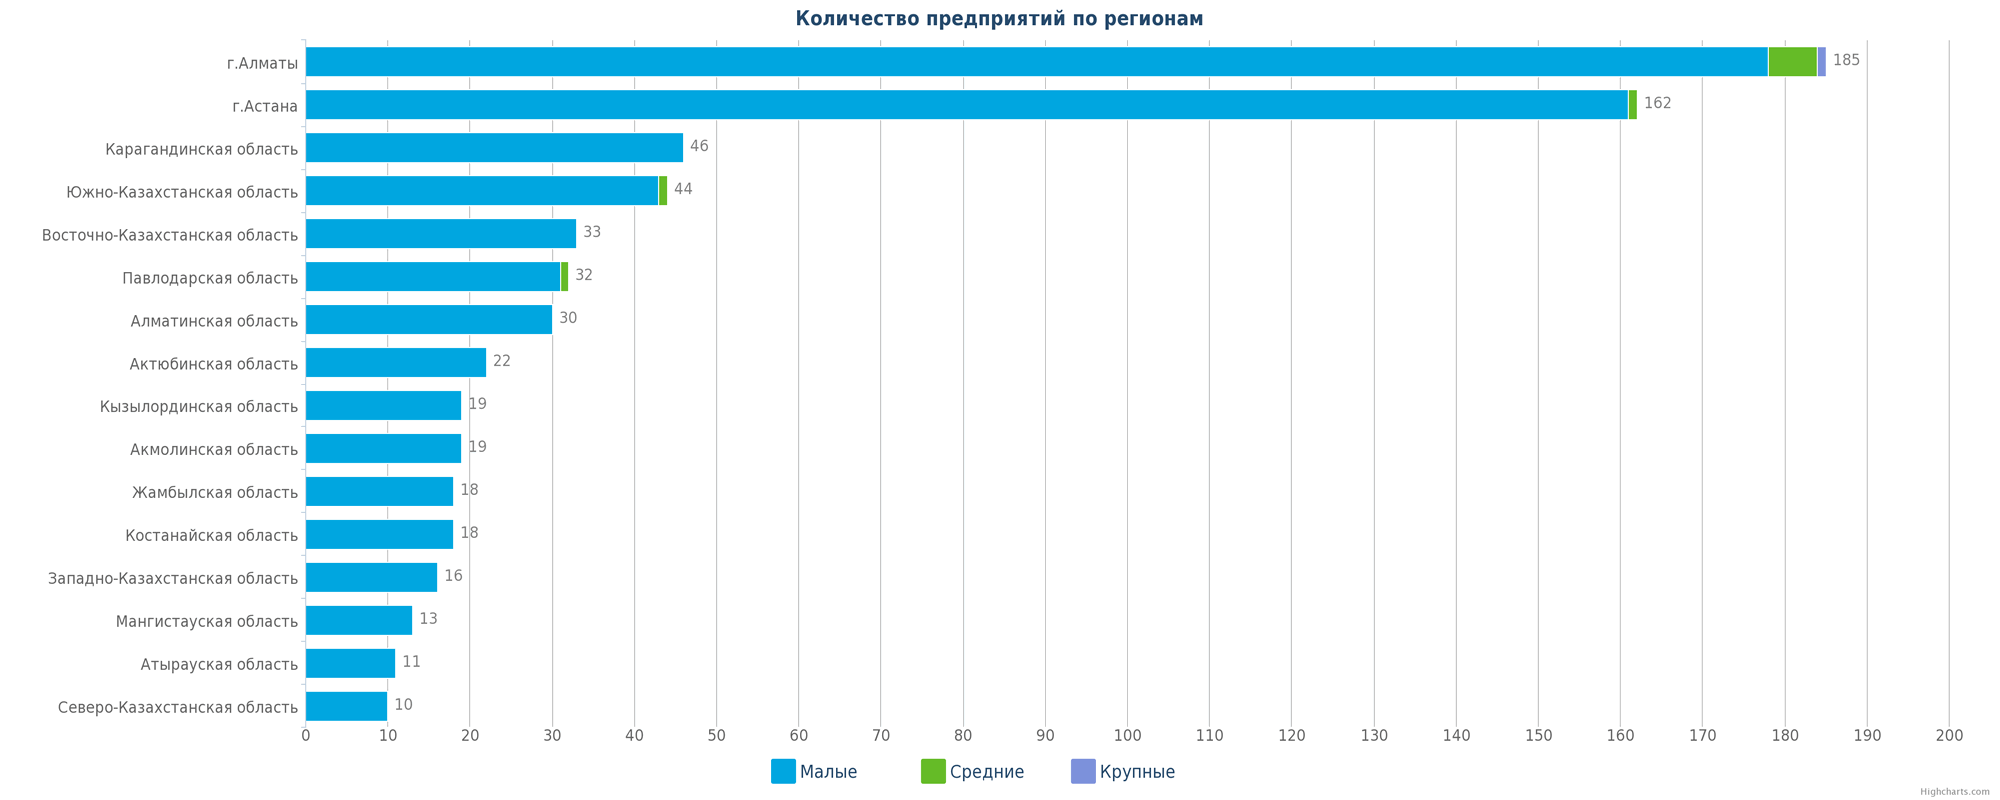 Количество новых организаций в базе по регионам Казахстана